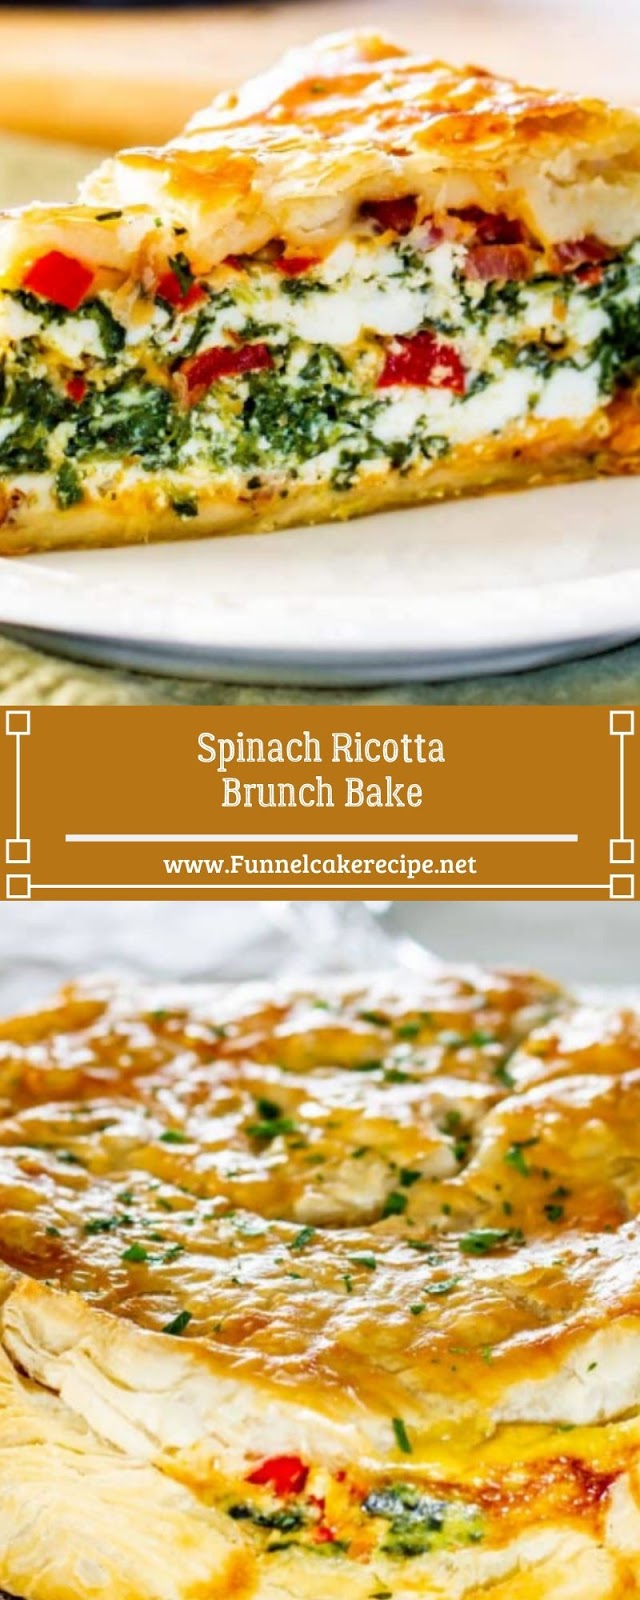 Spinach Ricotta Brunch Bake